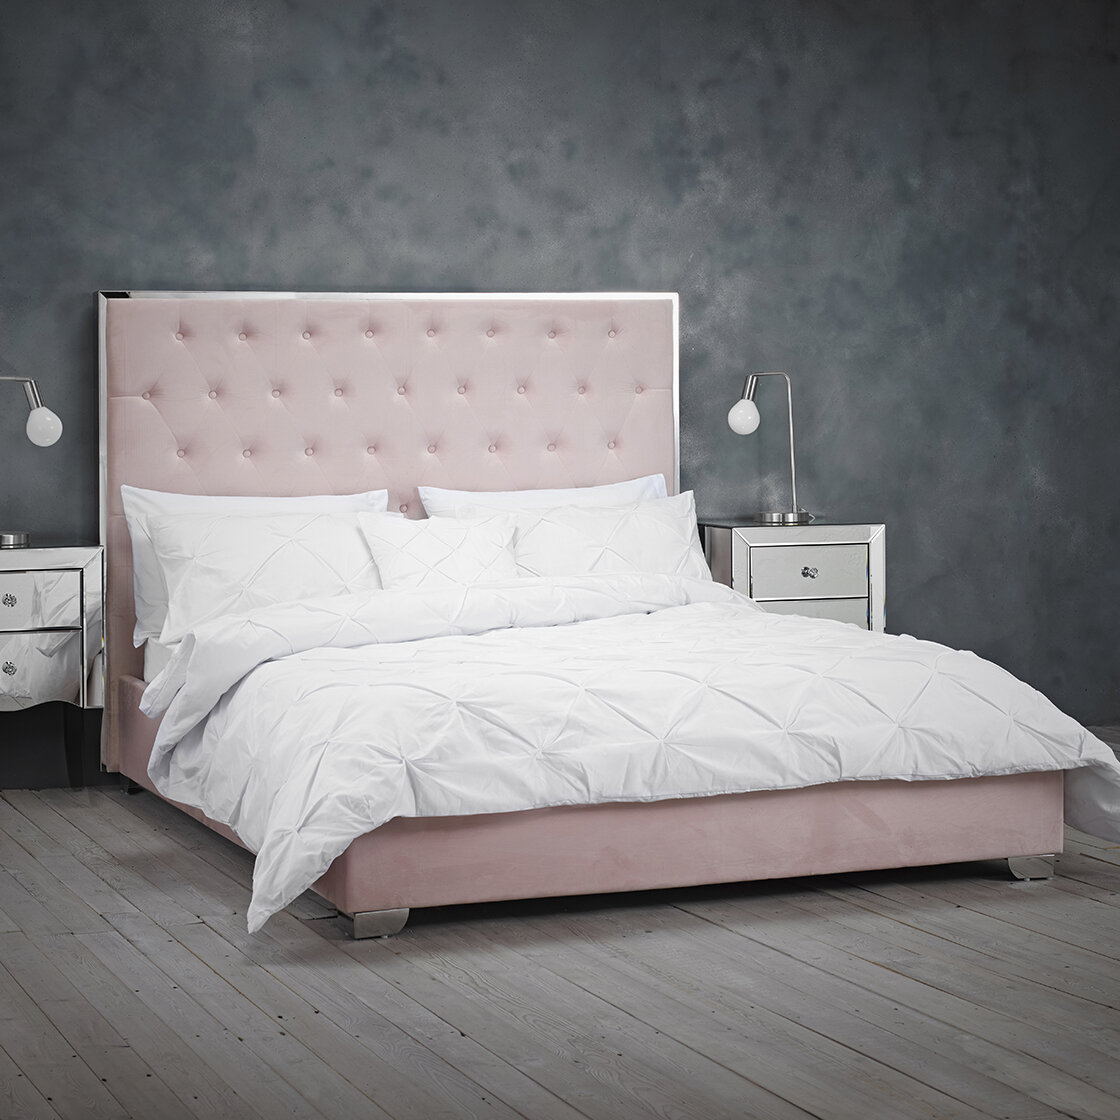 Fairmont Park Zakary Upholstered Bed Frame & Reviews | Wayfair.co.uk